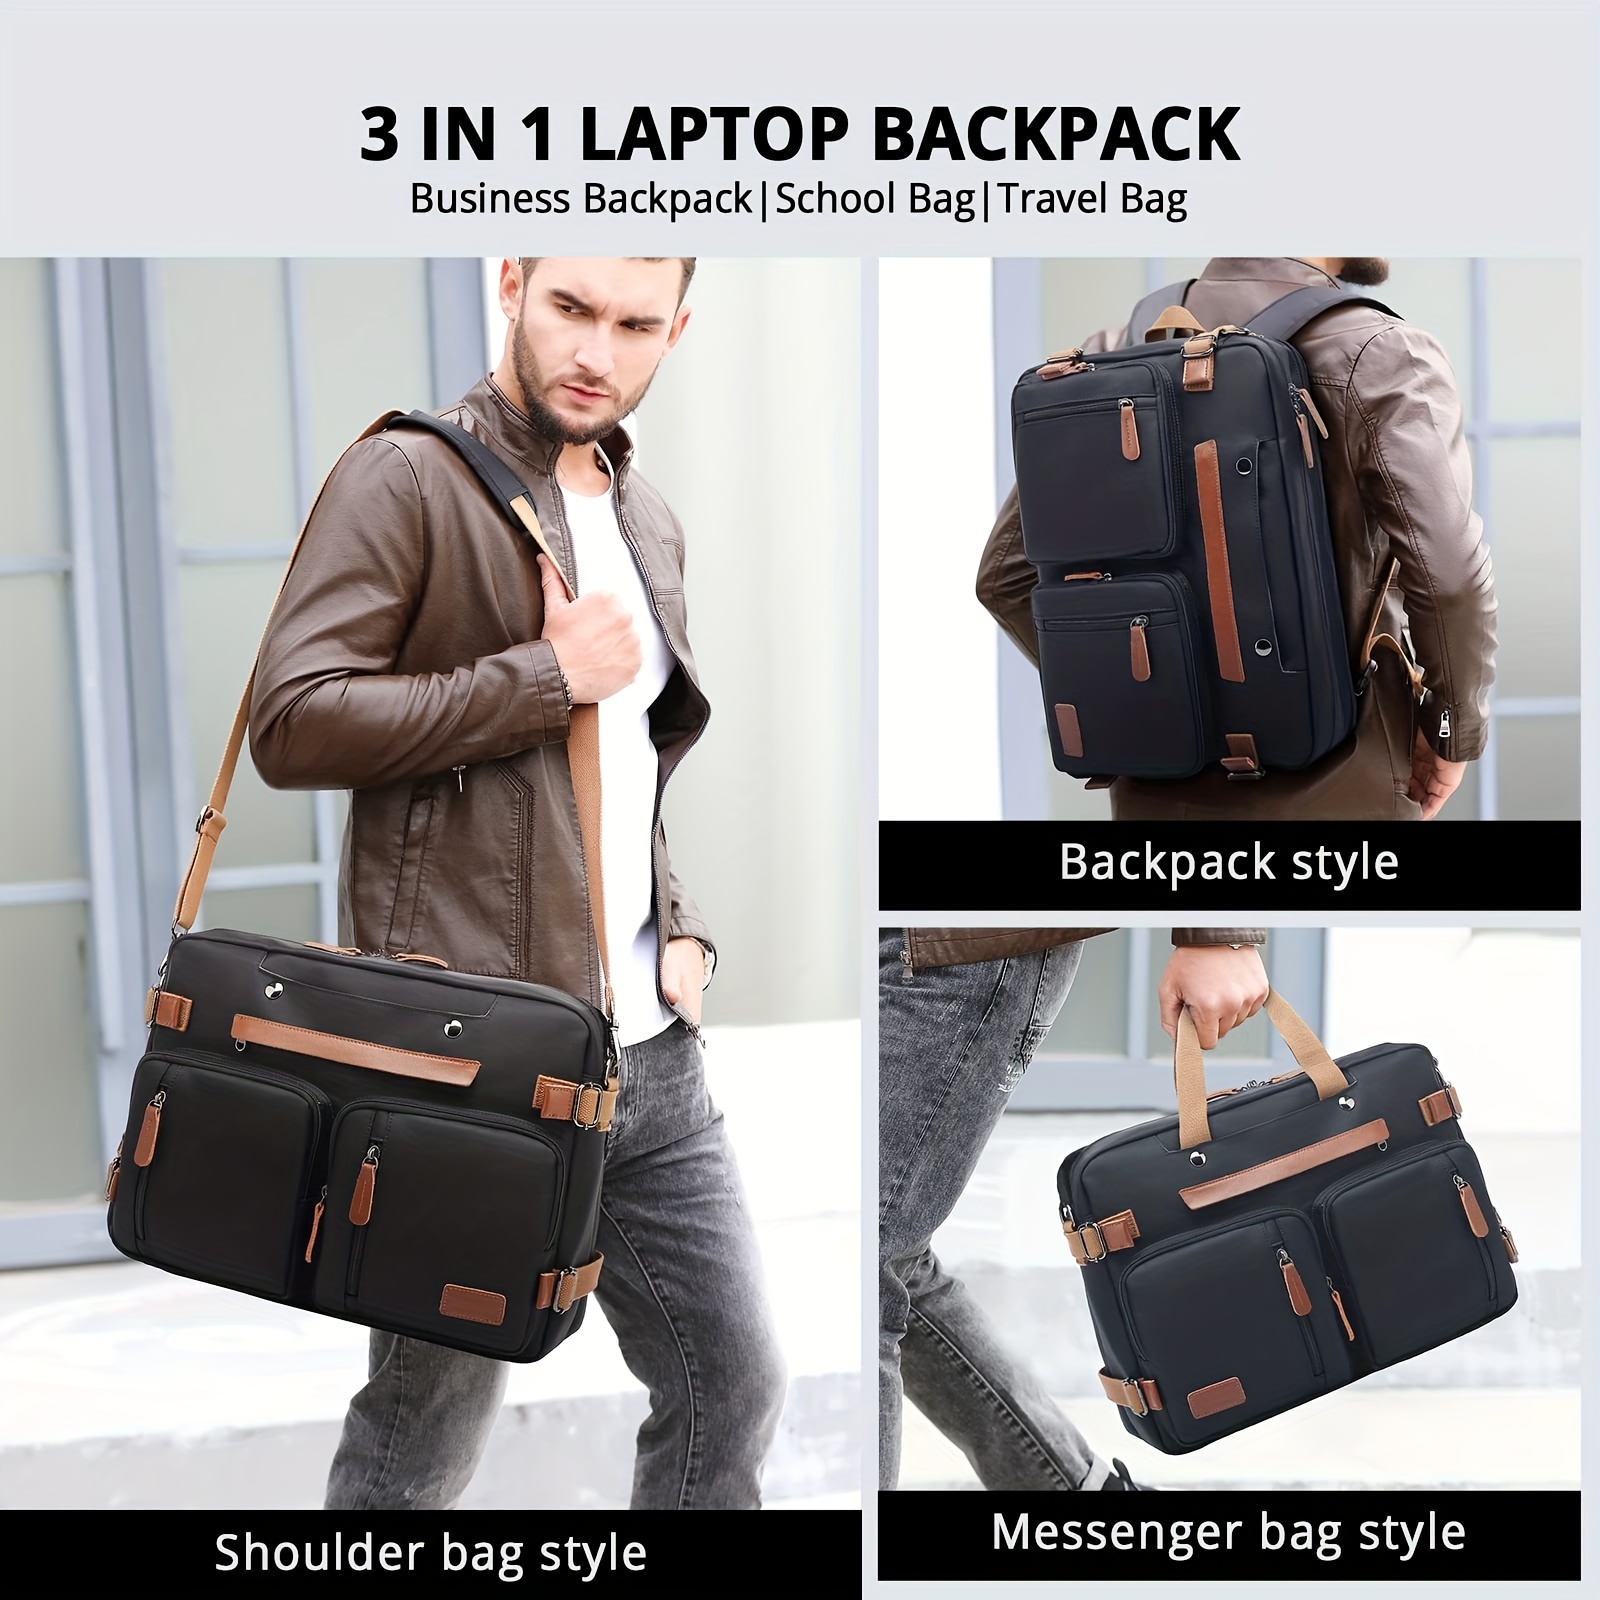 Convertible backpack into shoulder bag